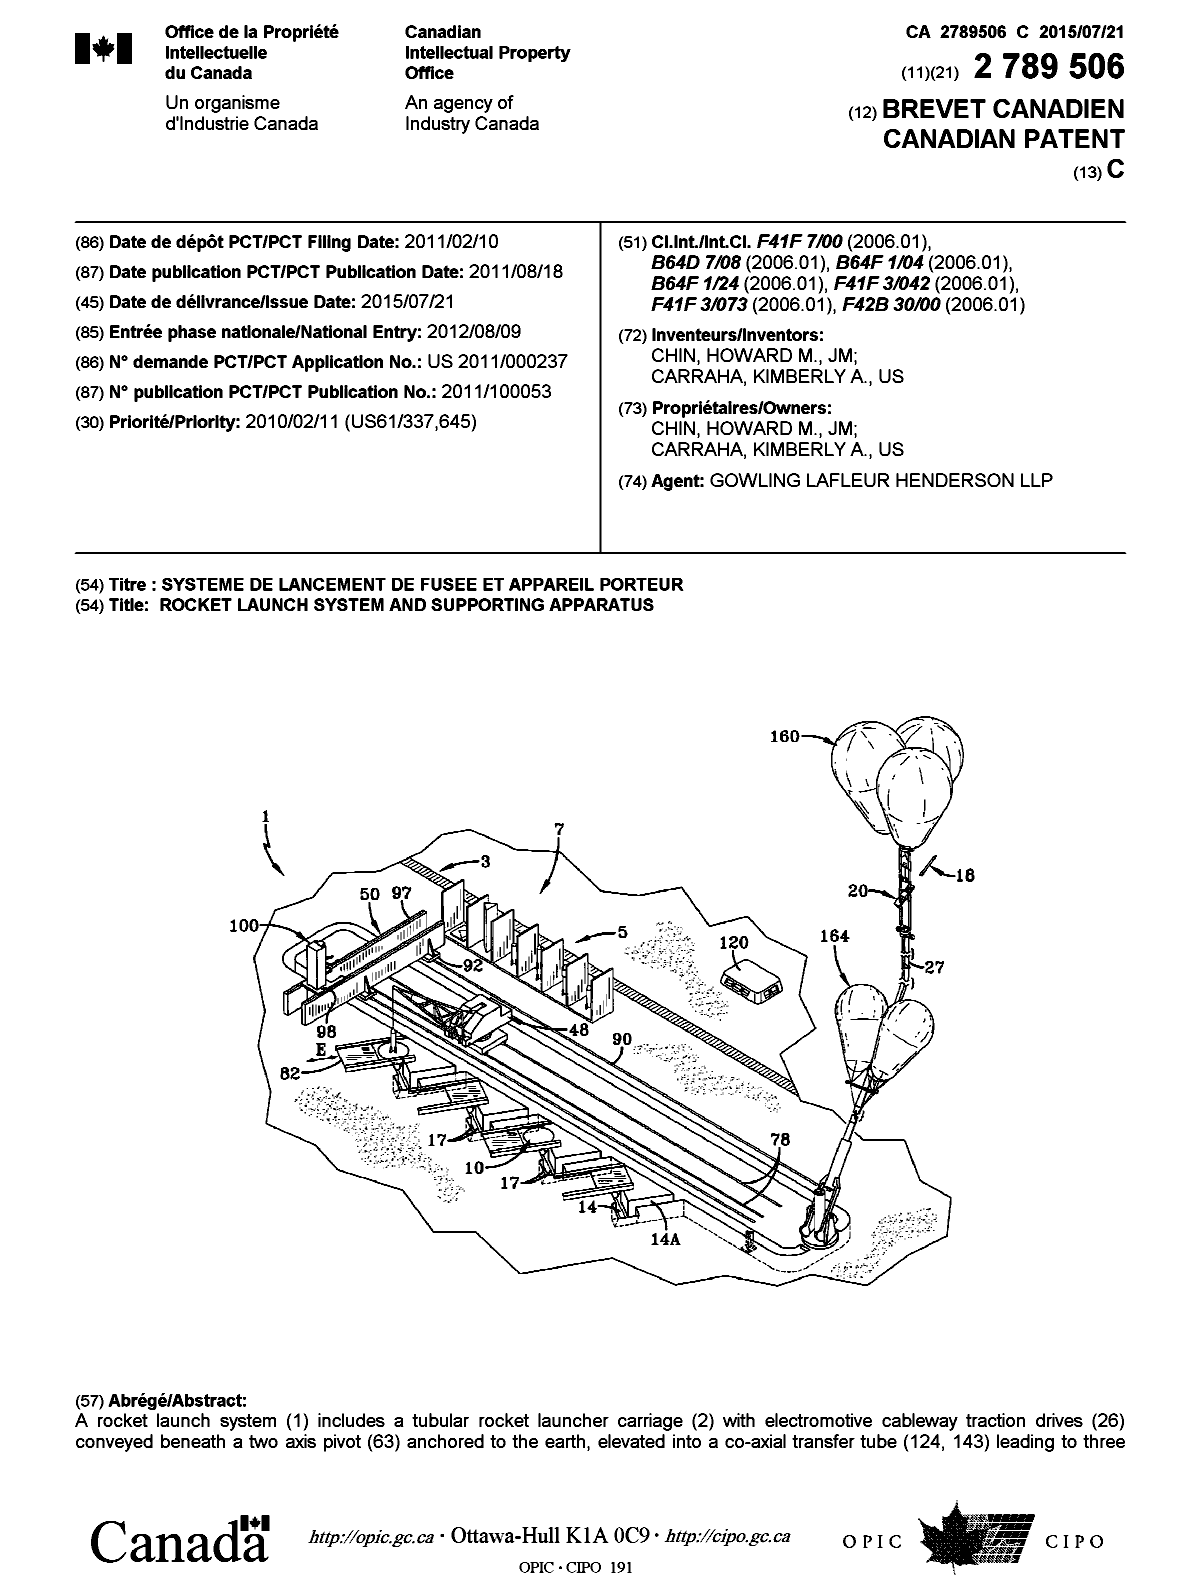 Document de brevet canadien 2789506. Page couverture 20141208. Image 1 de 2